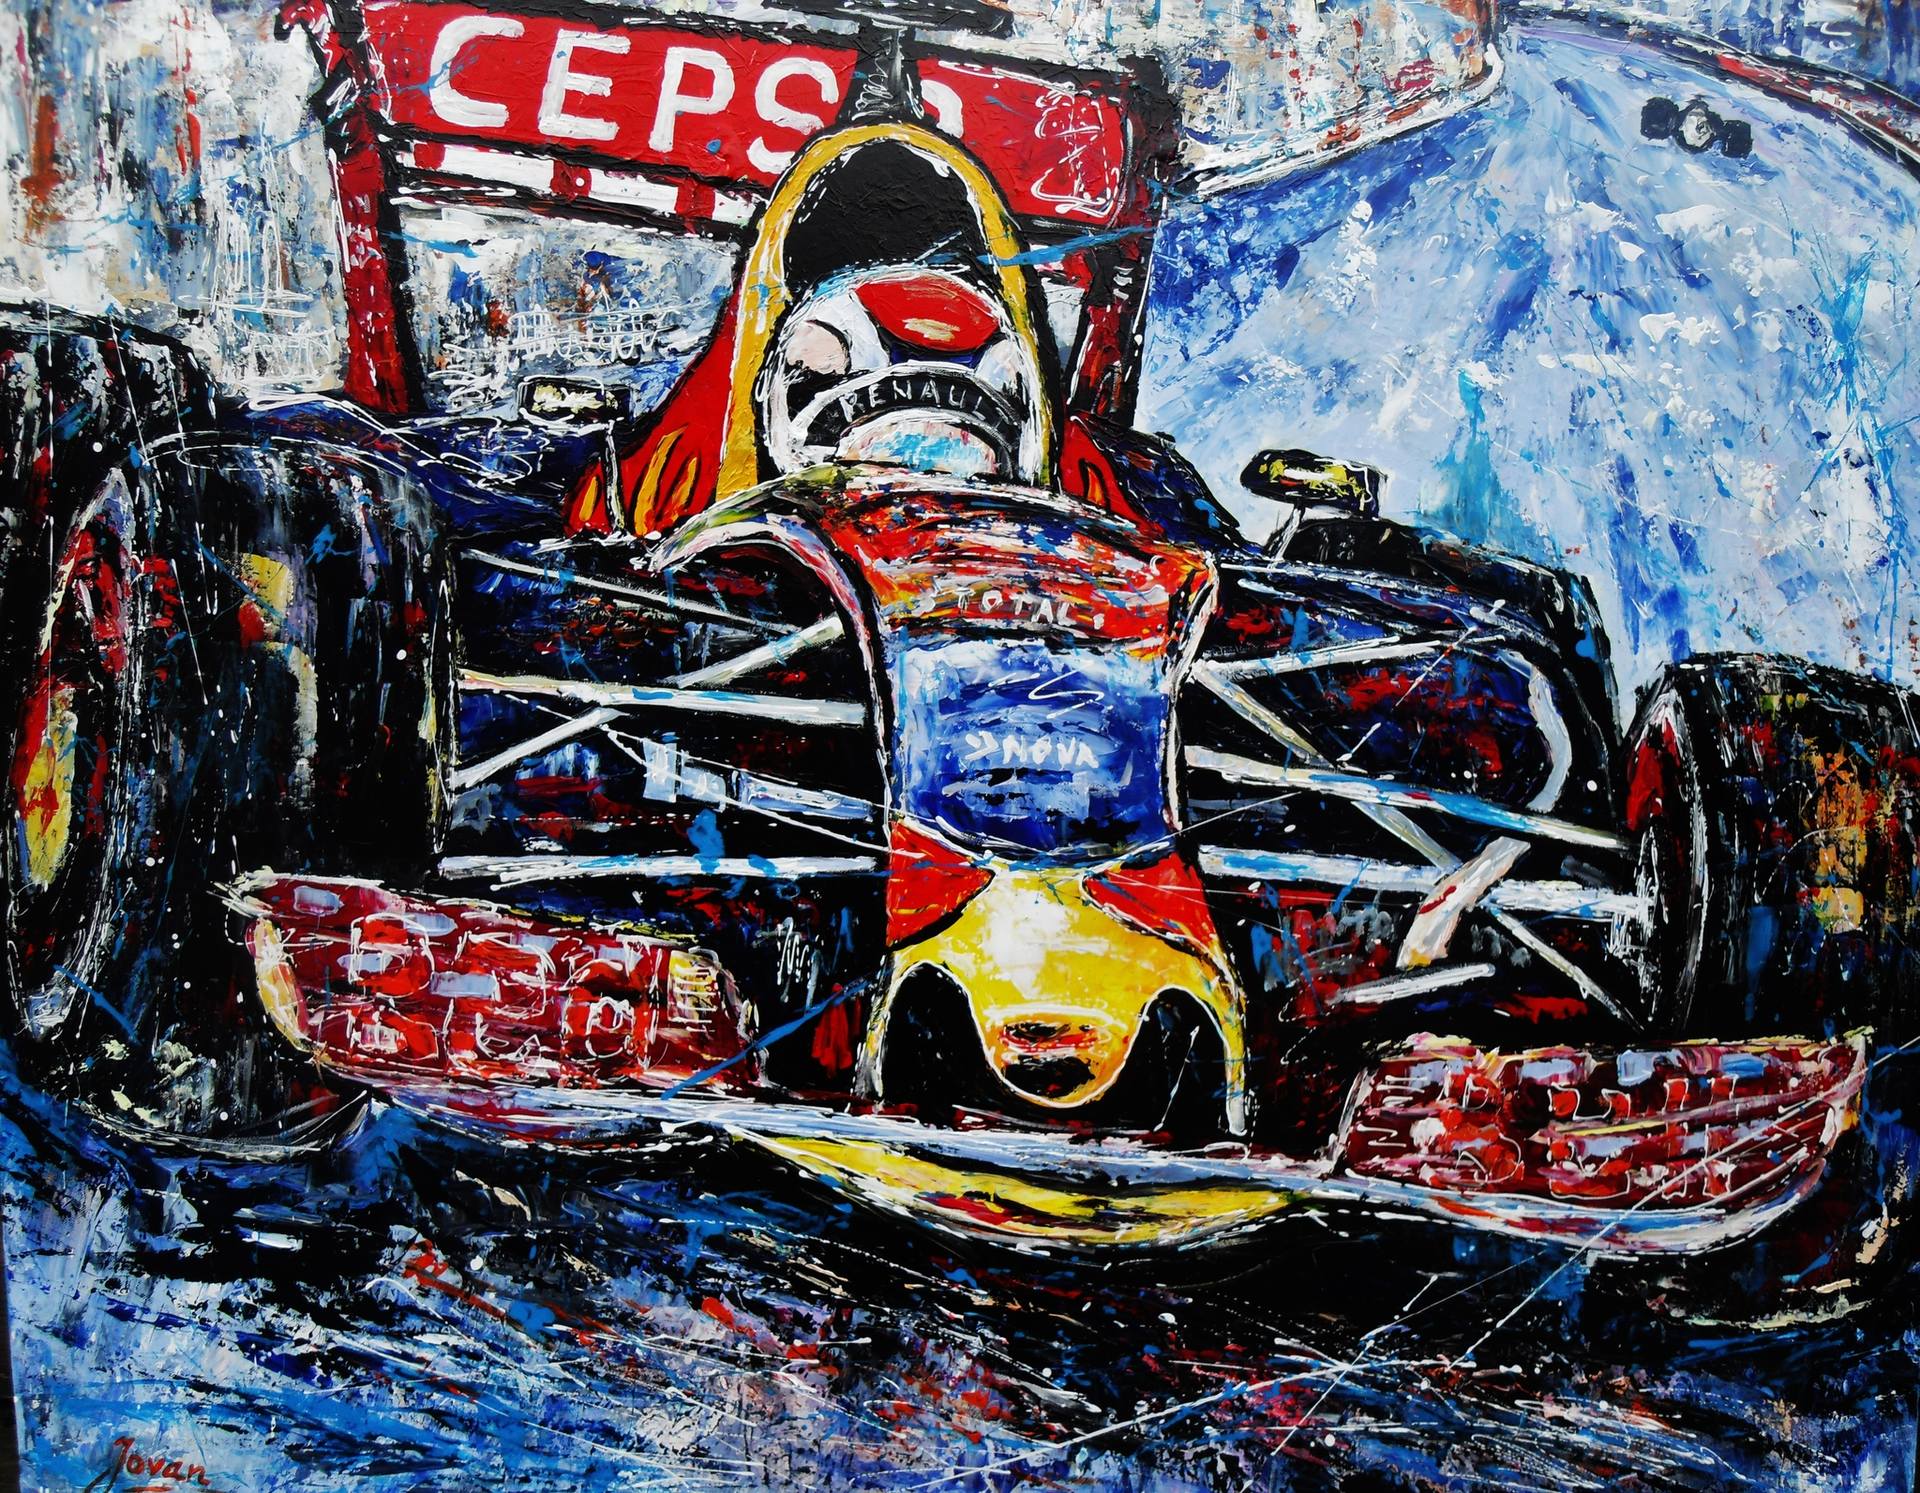 Conjugeren Missionaris banaan Formule 1, Max Verstappen Painting by Jovan Srijemac | Saatchi Art